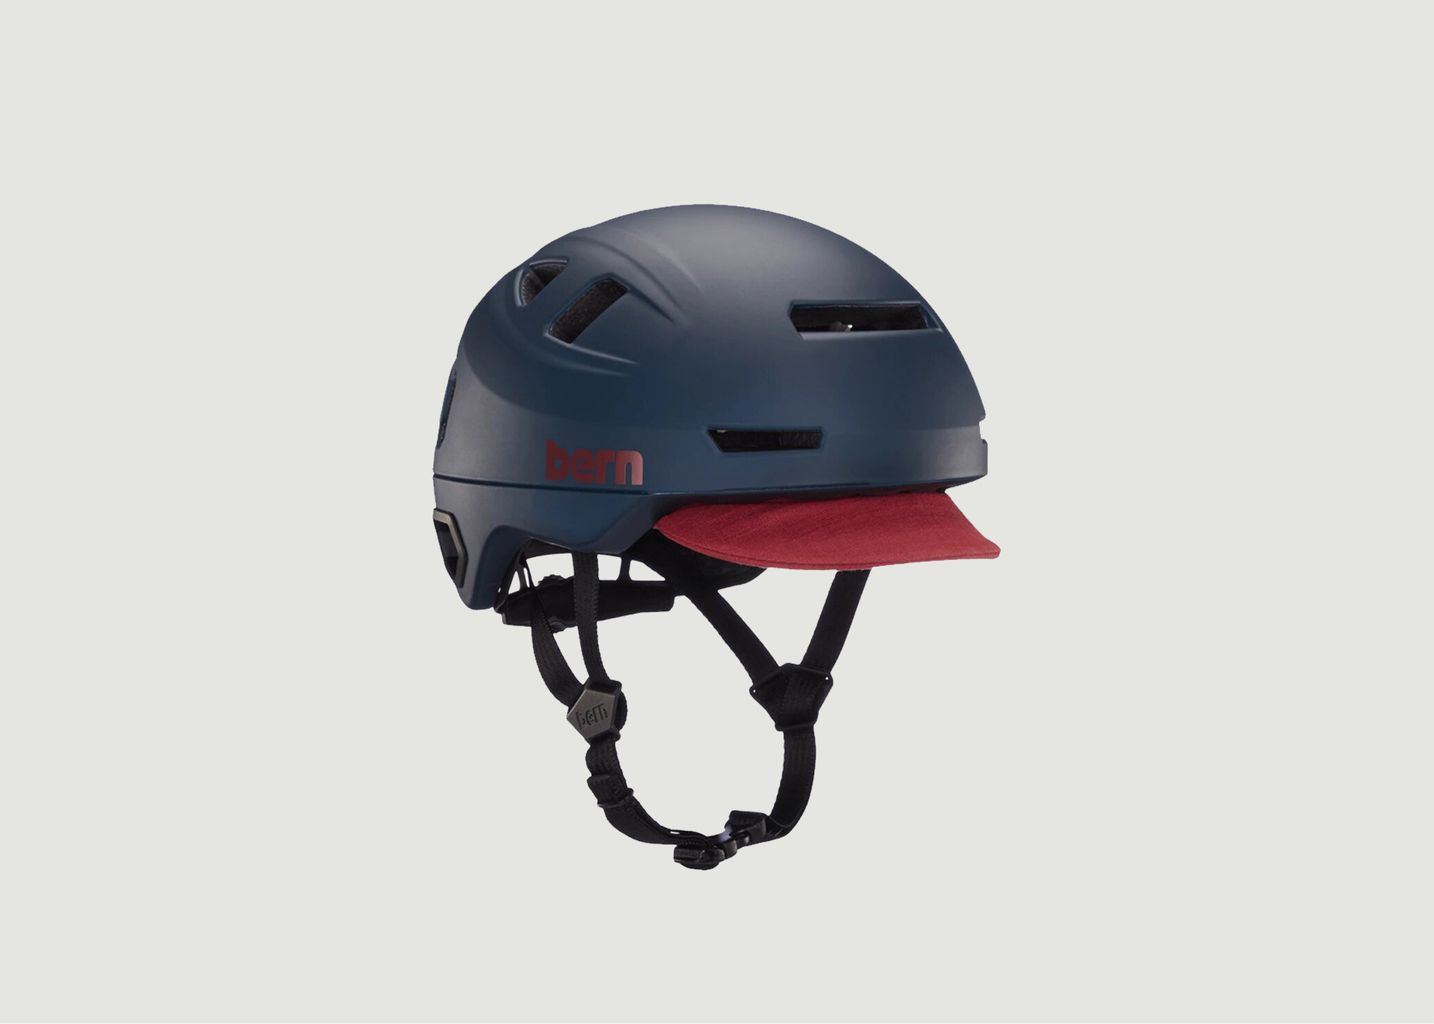 Hudson MIPS bike helmet - Bern